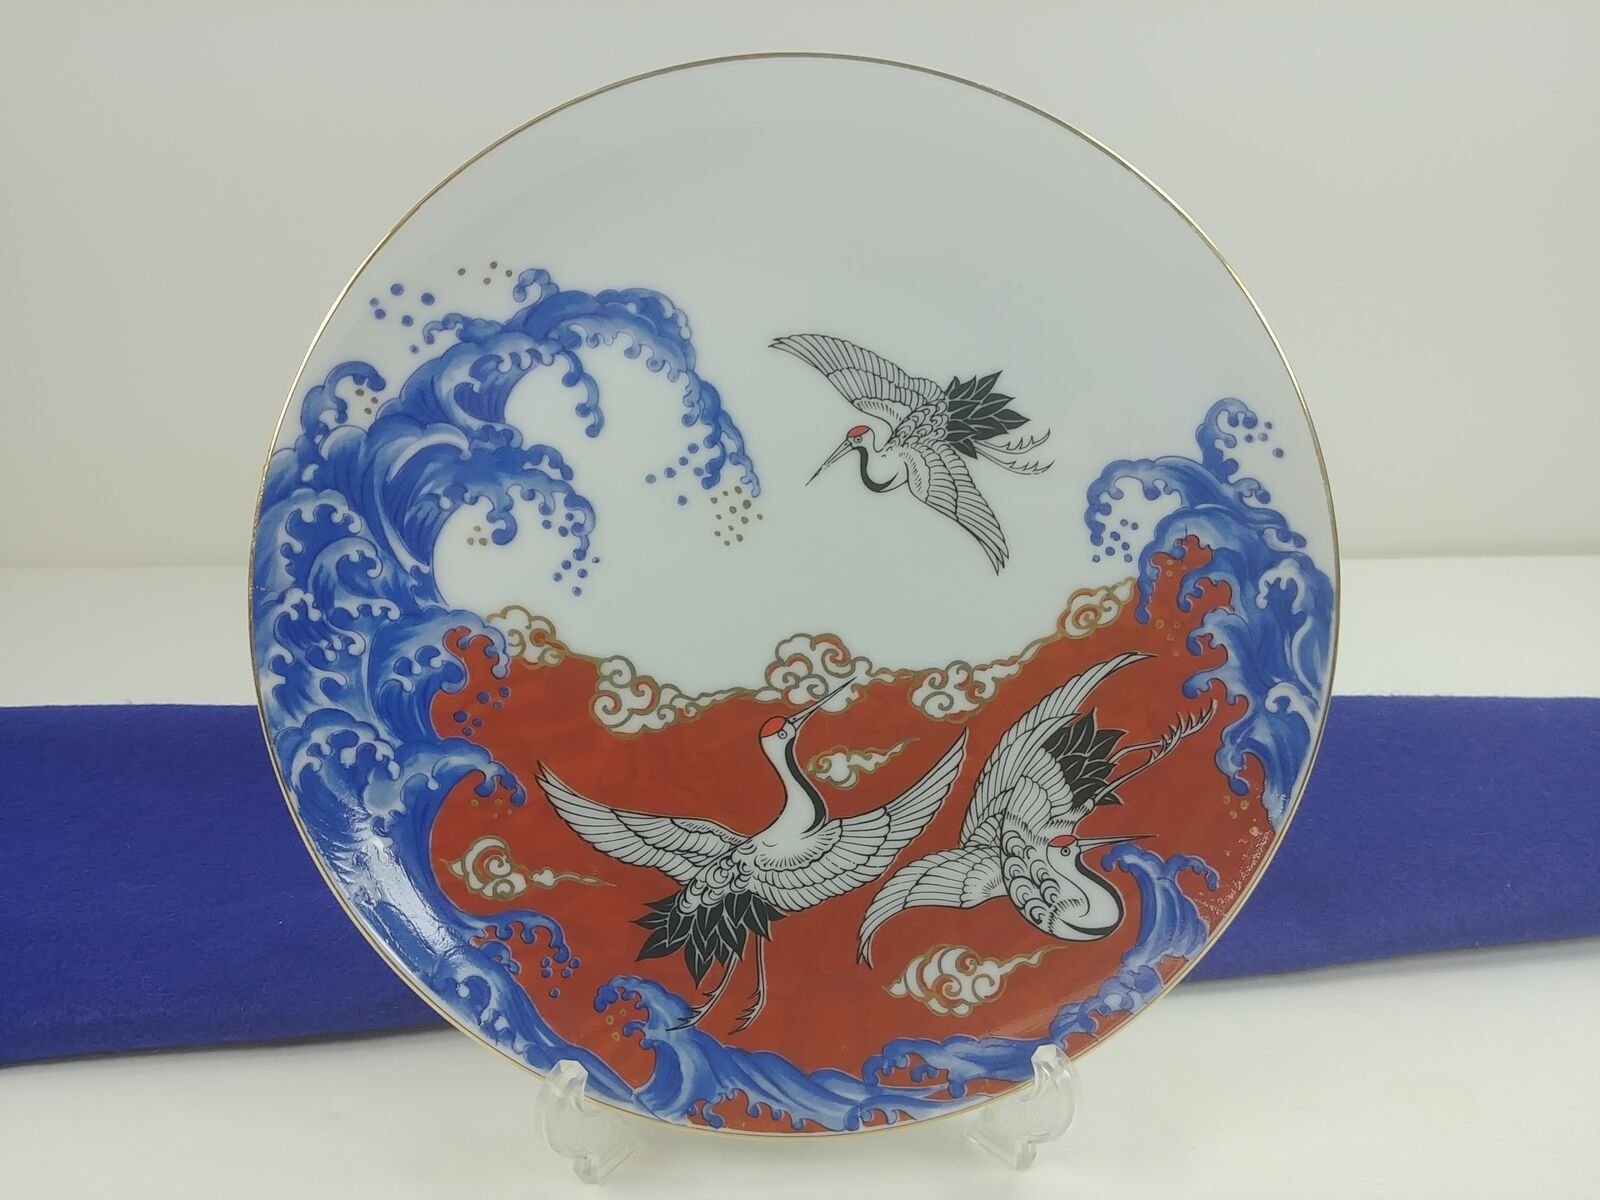 Vtg Takakashi Porcelain Decorative Plate w/ Easel Chop Marked & Original Decal